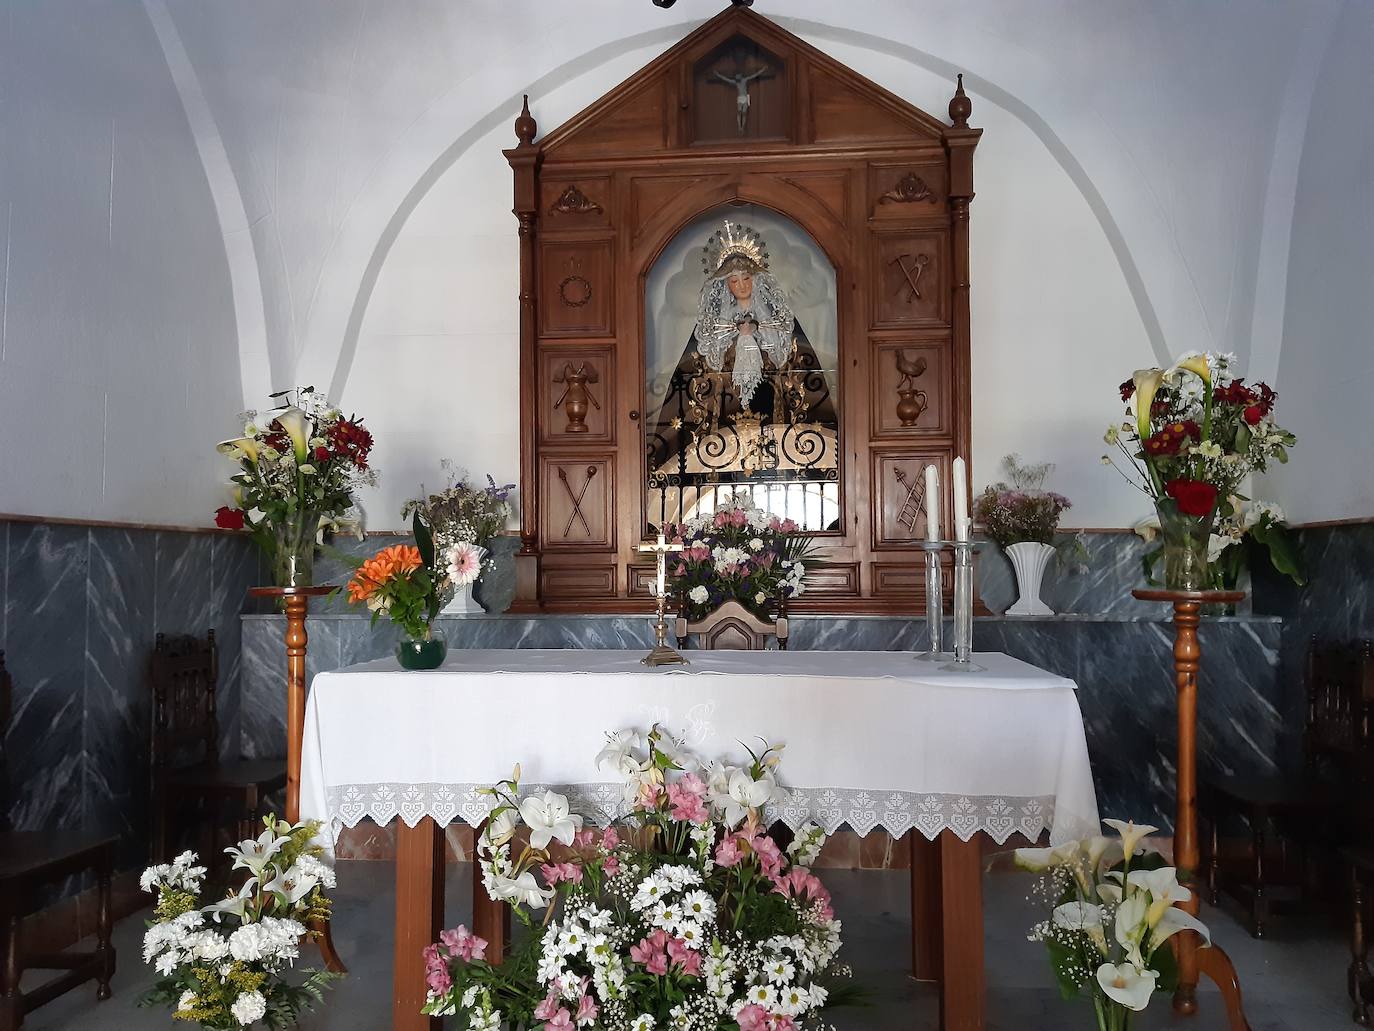 La Virgen de La Soledad dejará su camarín mañana para ser trasladada a la parroquia hasta la noche de Viernes Santo. /L.C.G.